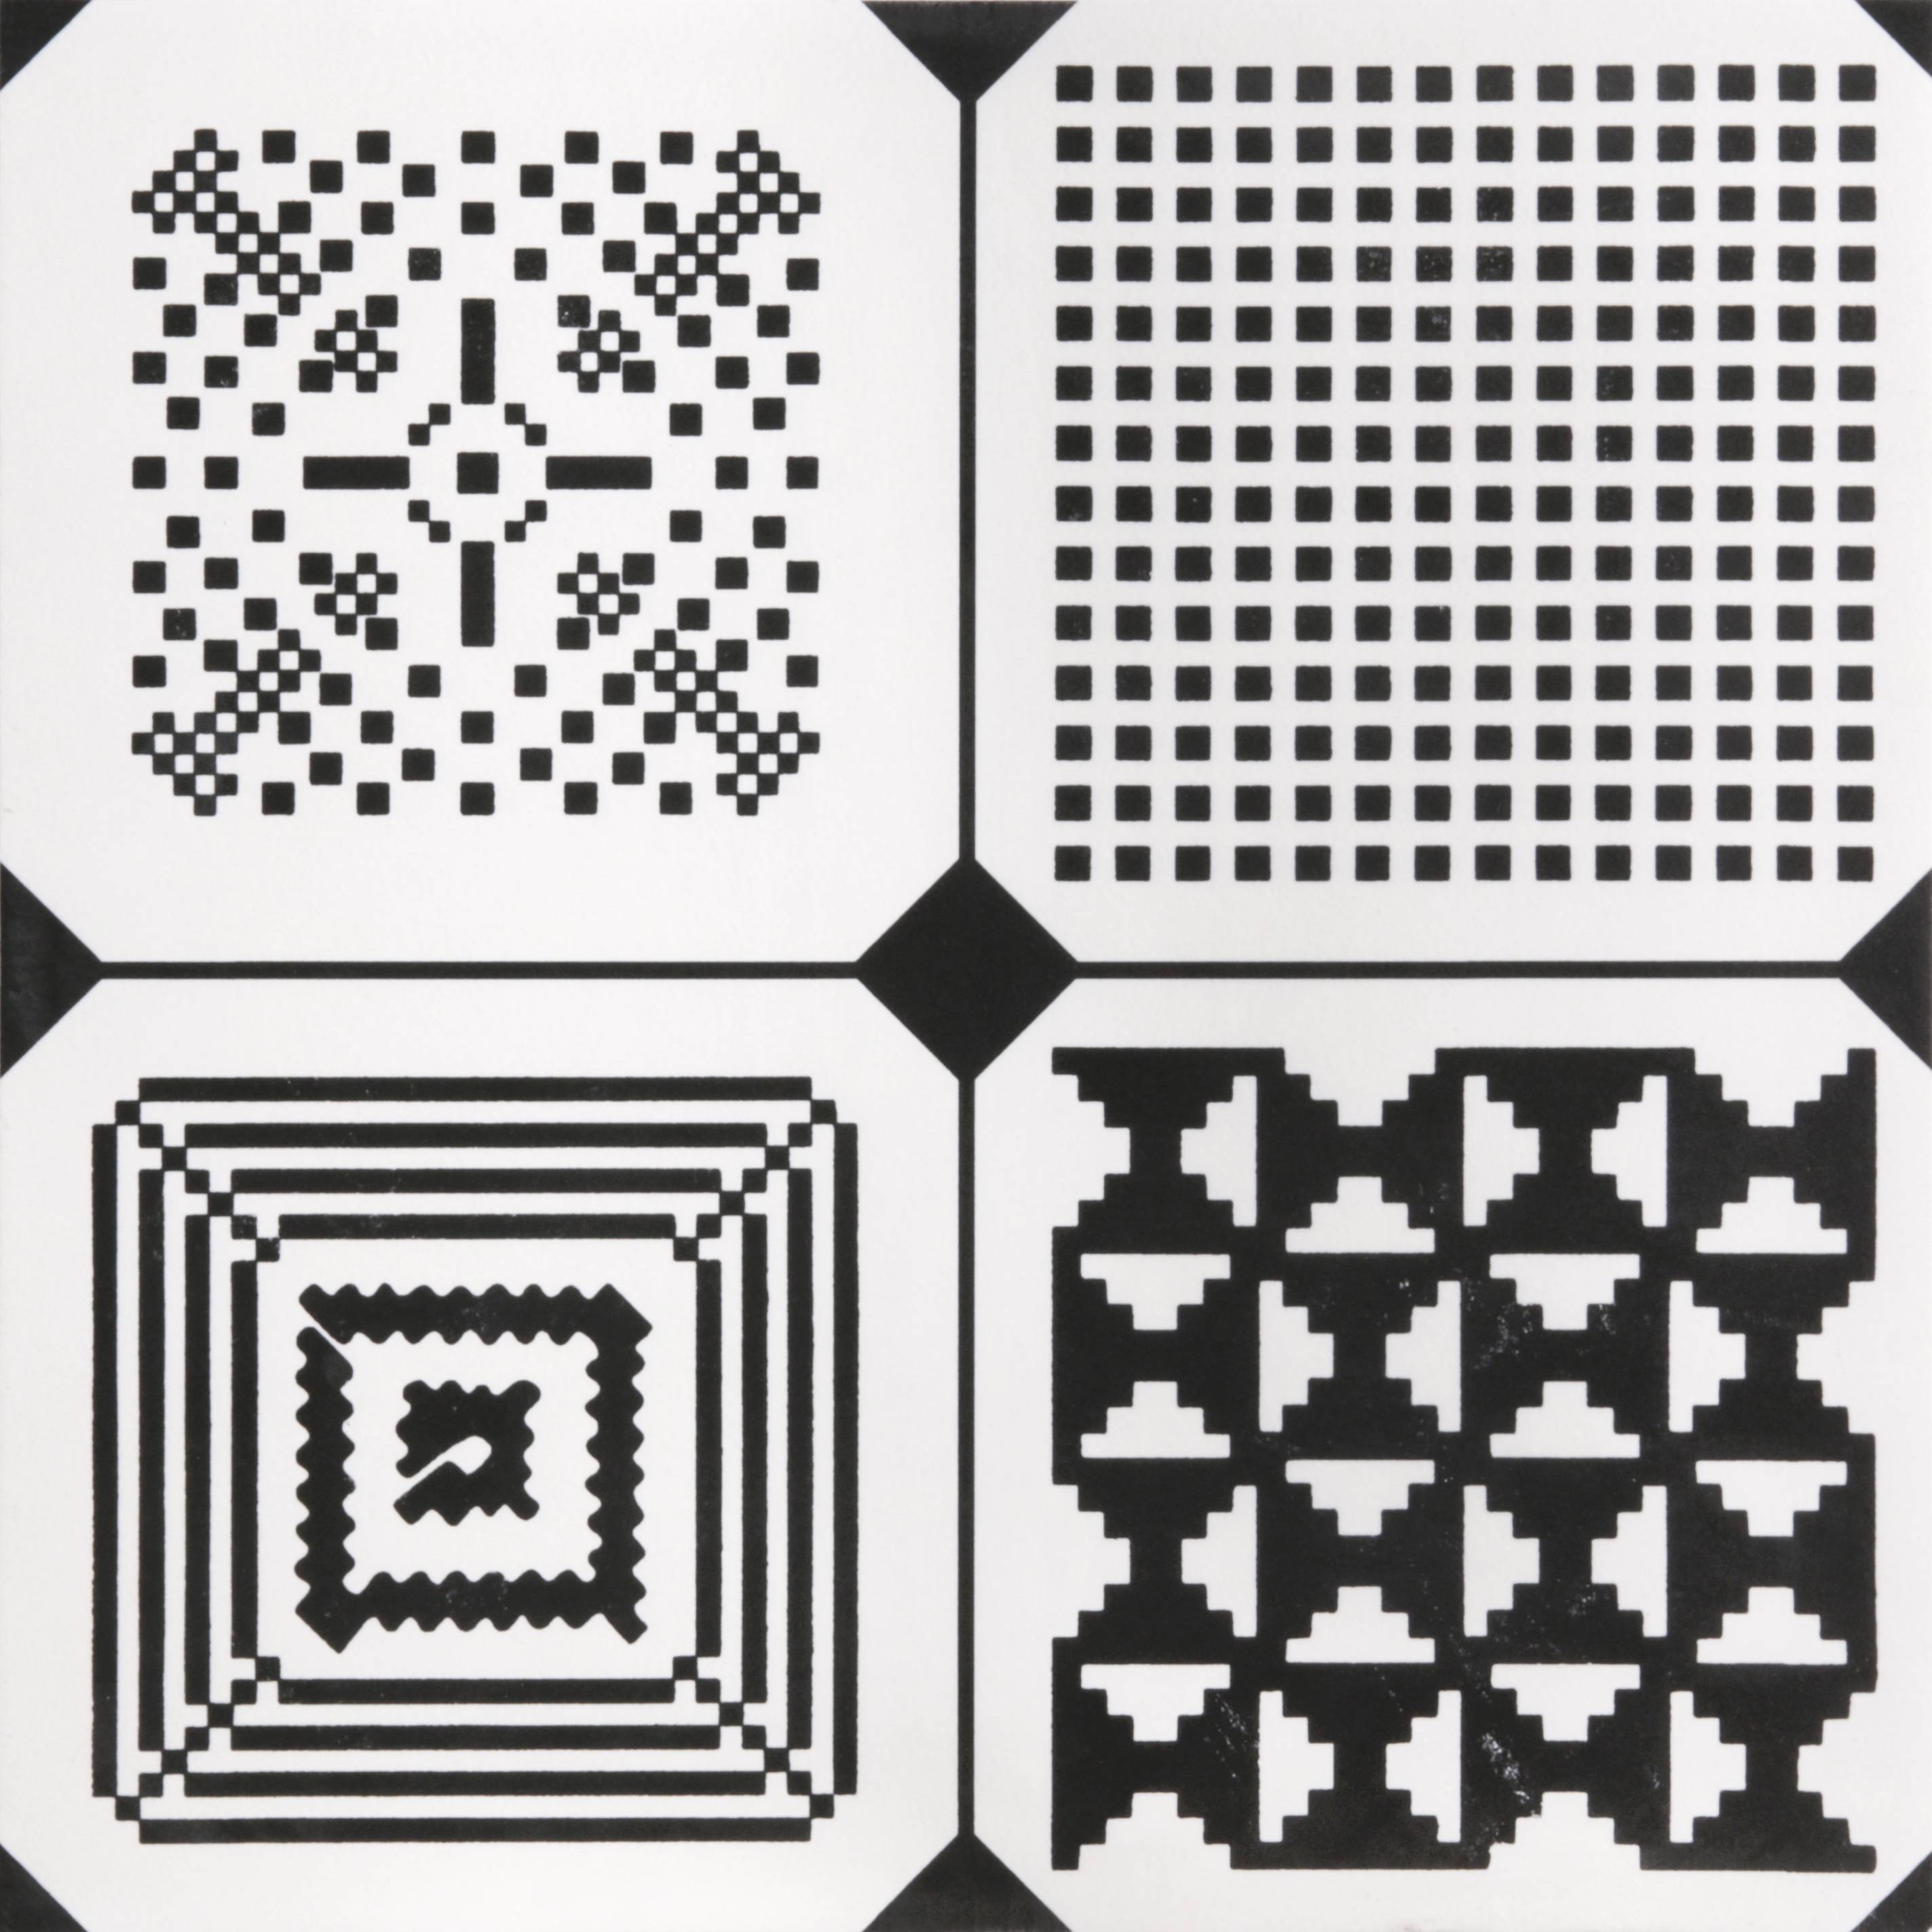 中國佛山瓷磚 China Foshan Tiles Encaustic Tiles 啞光地磚 牆磚F0108花磚 裝飾磚 混裝發貨 隨機圖案 30×30cm